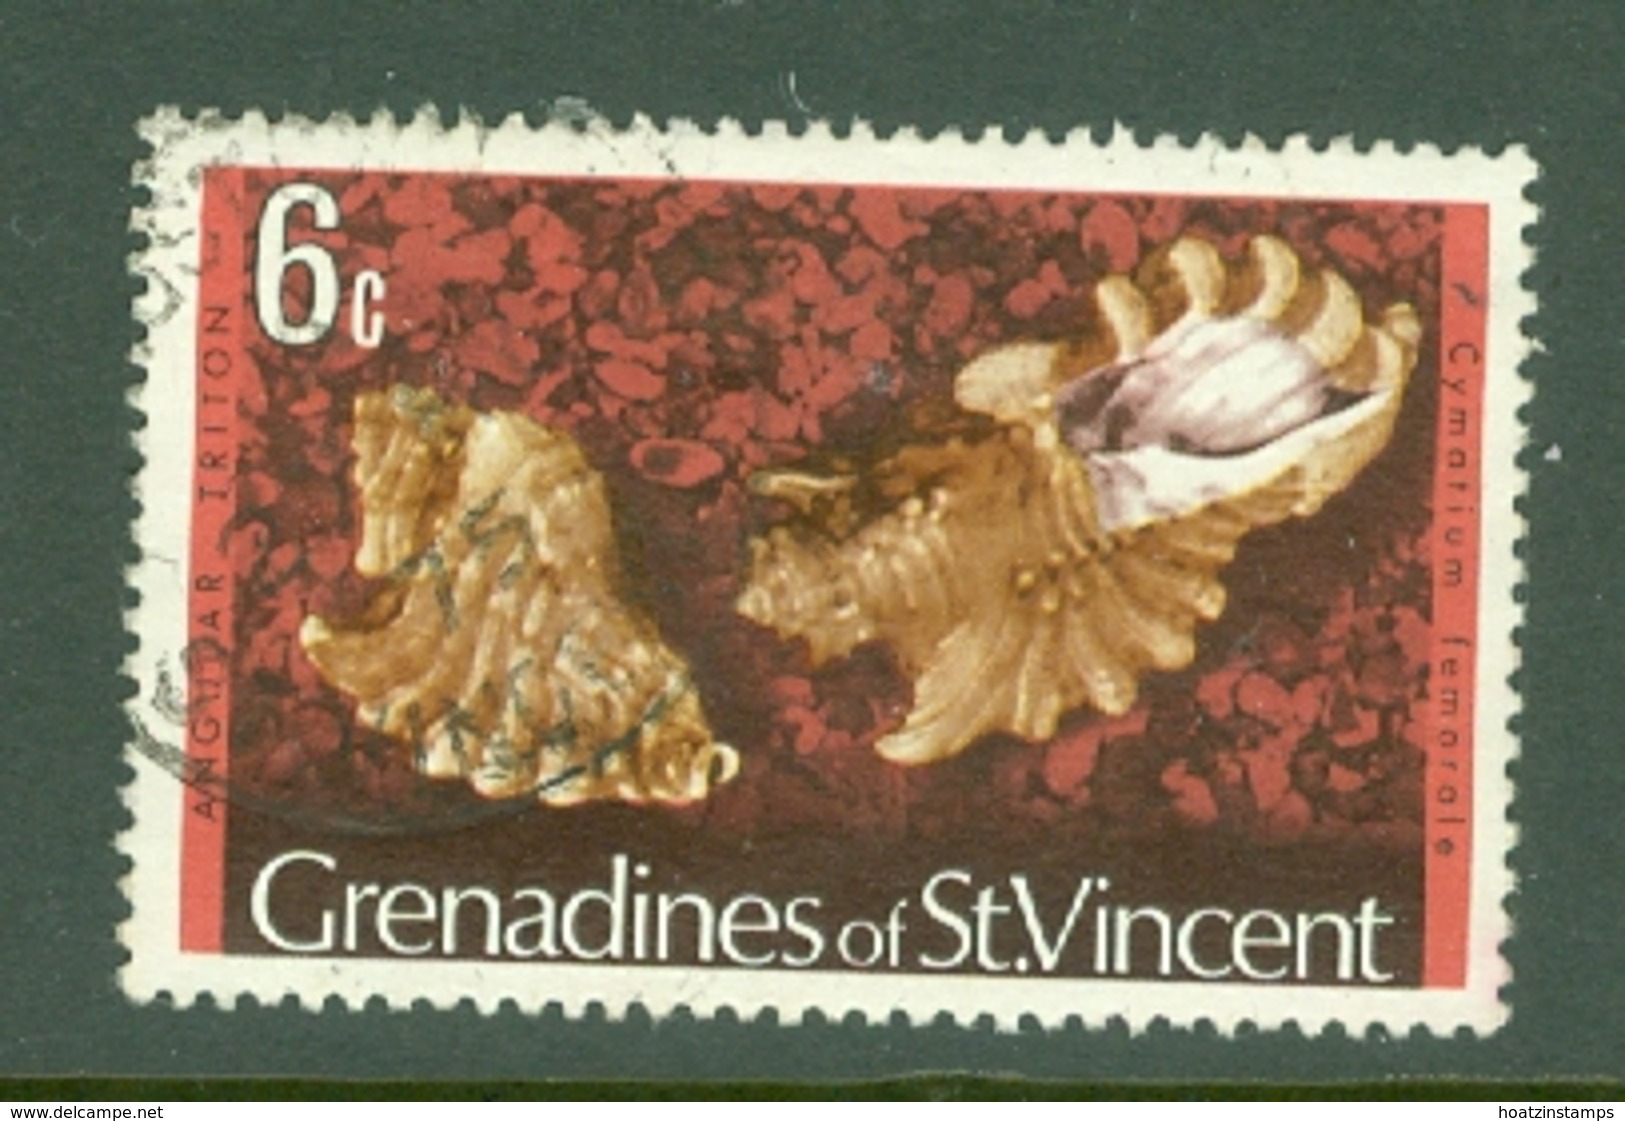 St Vincent Grenadines: 1974/77   Shells & Molluscs  SG40A    6c   [No Imprint Date]    Used - St.Vincent & Grenadines